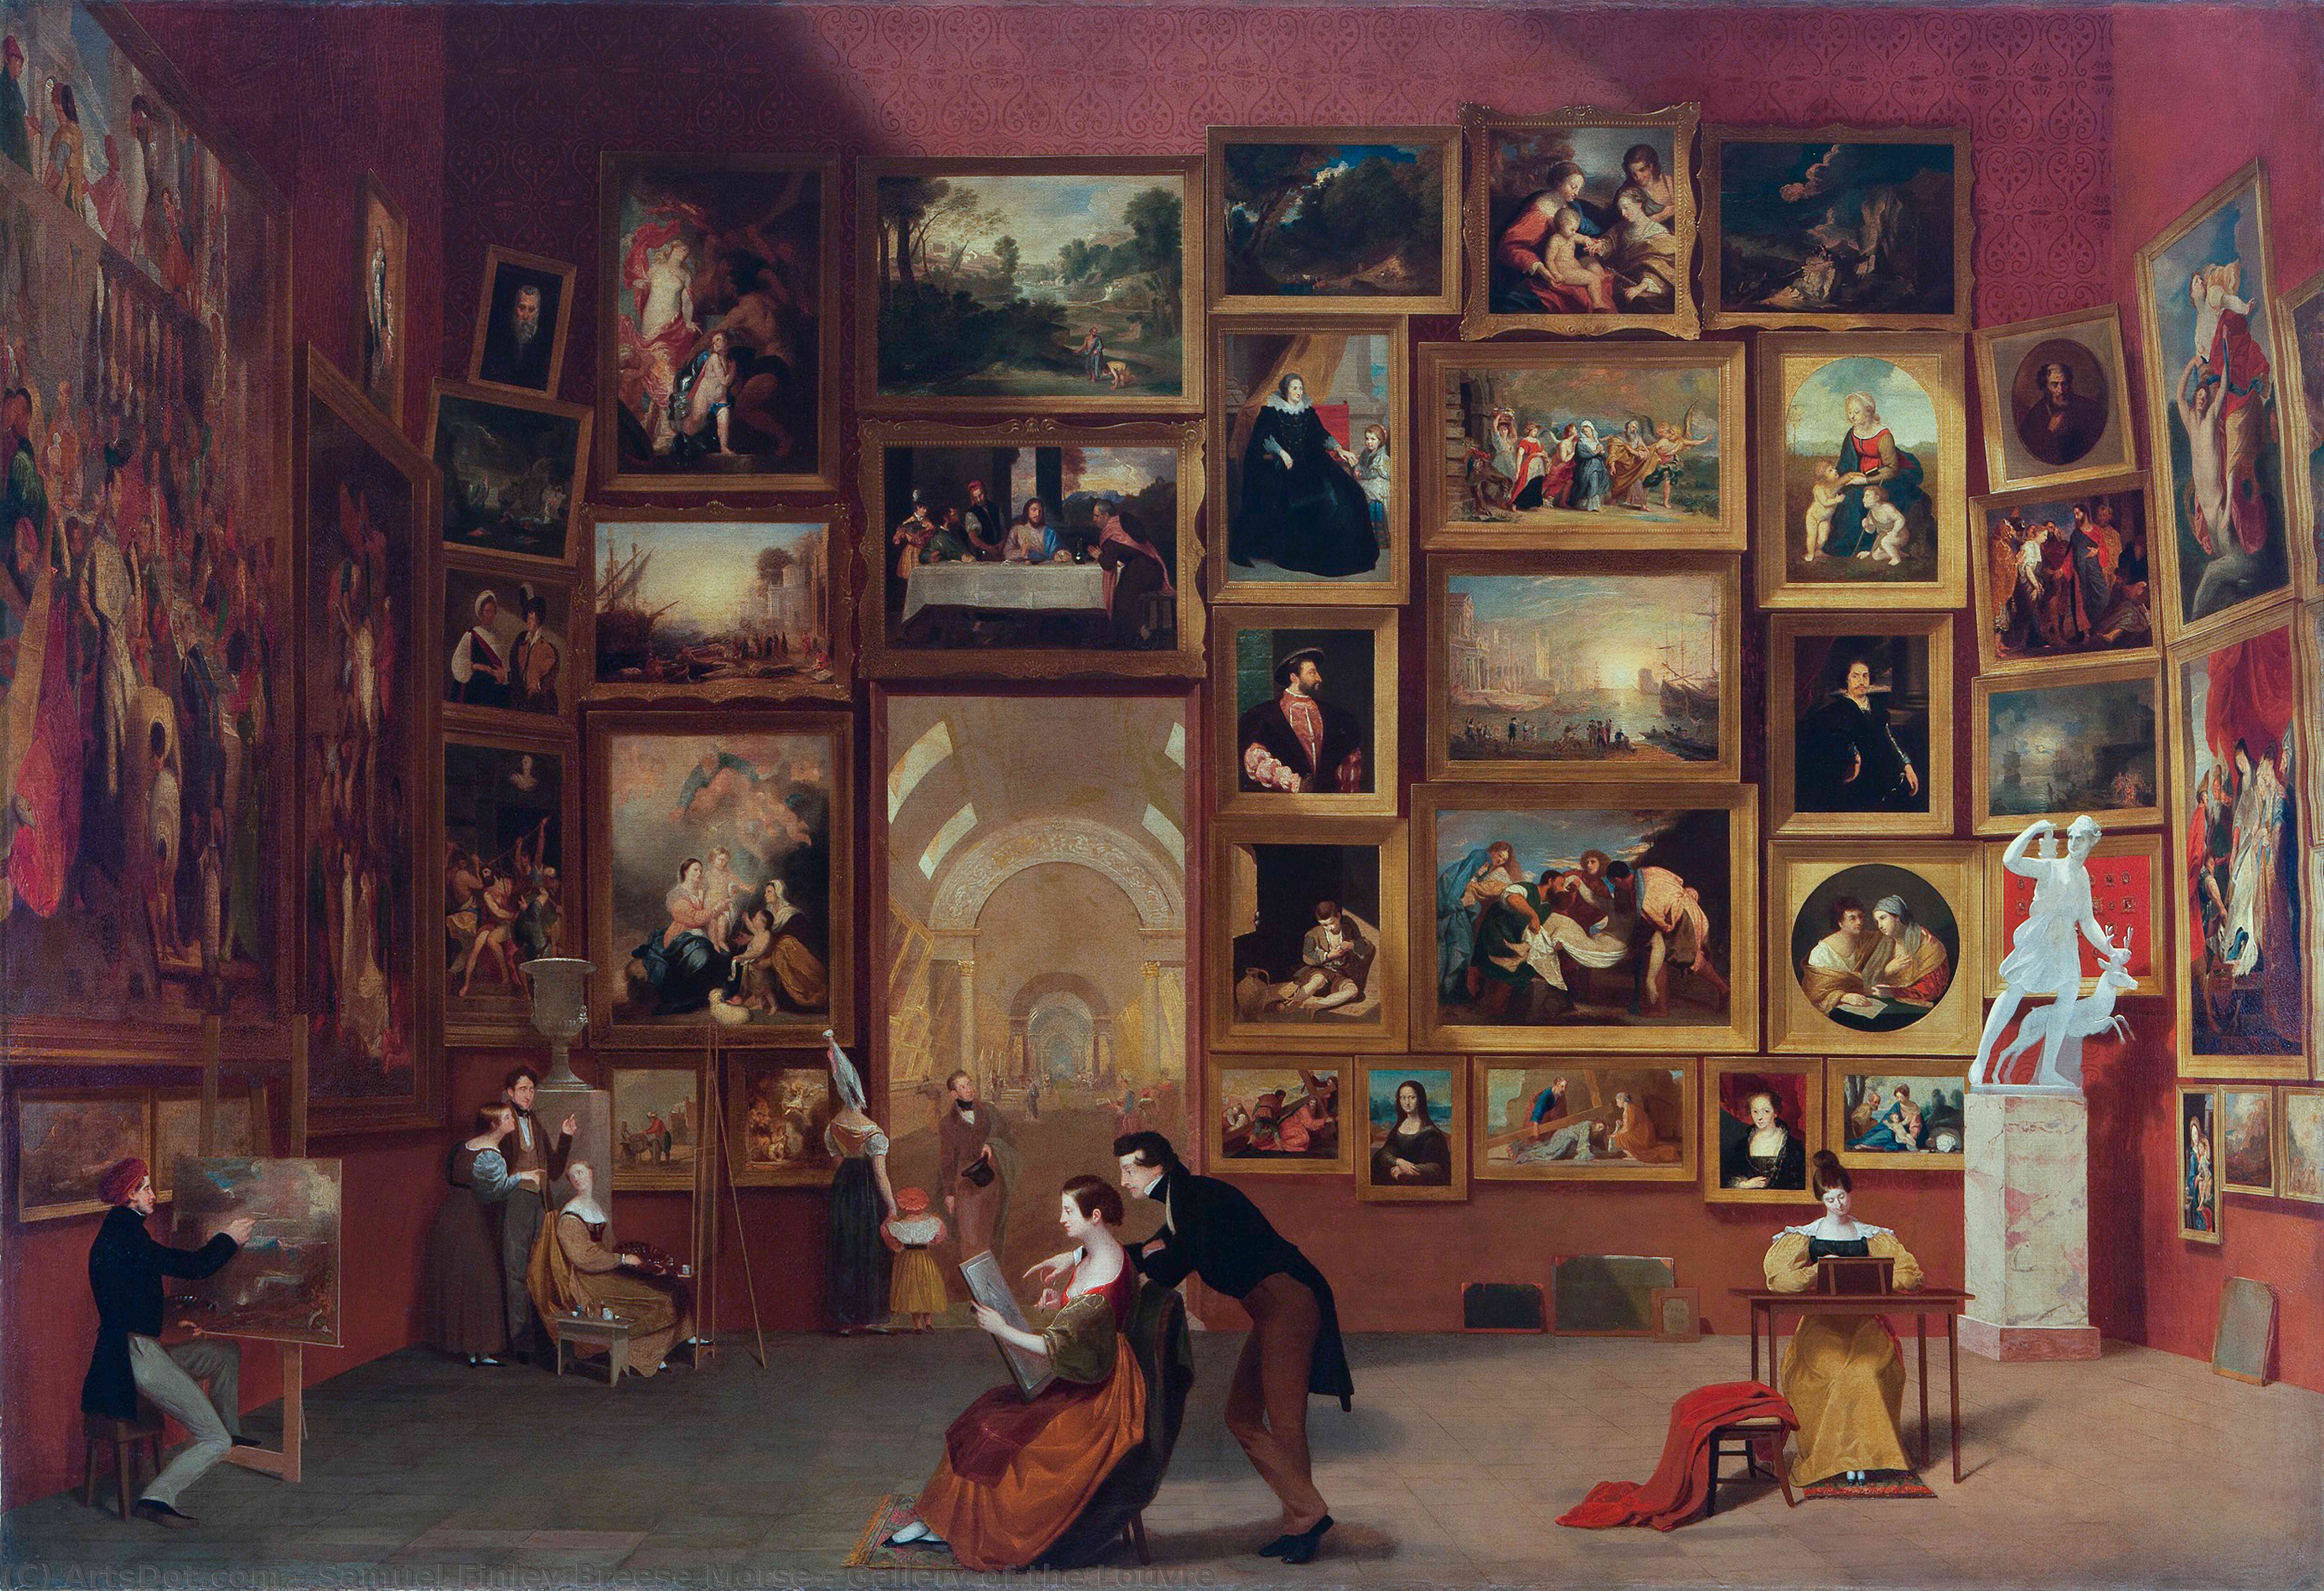 Какие произведения искусства. Сэмюэль Морзе галерея Лувра. Живопись Самуэль Морзе. Галерея Лувра», Морзе Сэмюэл, 1832г. Картина Морзе галерея Лувра.